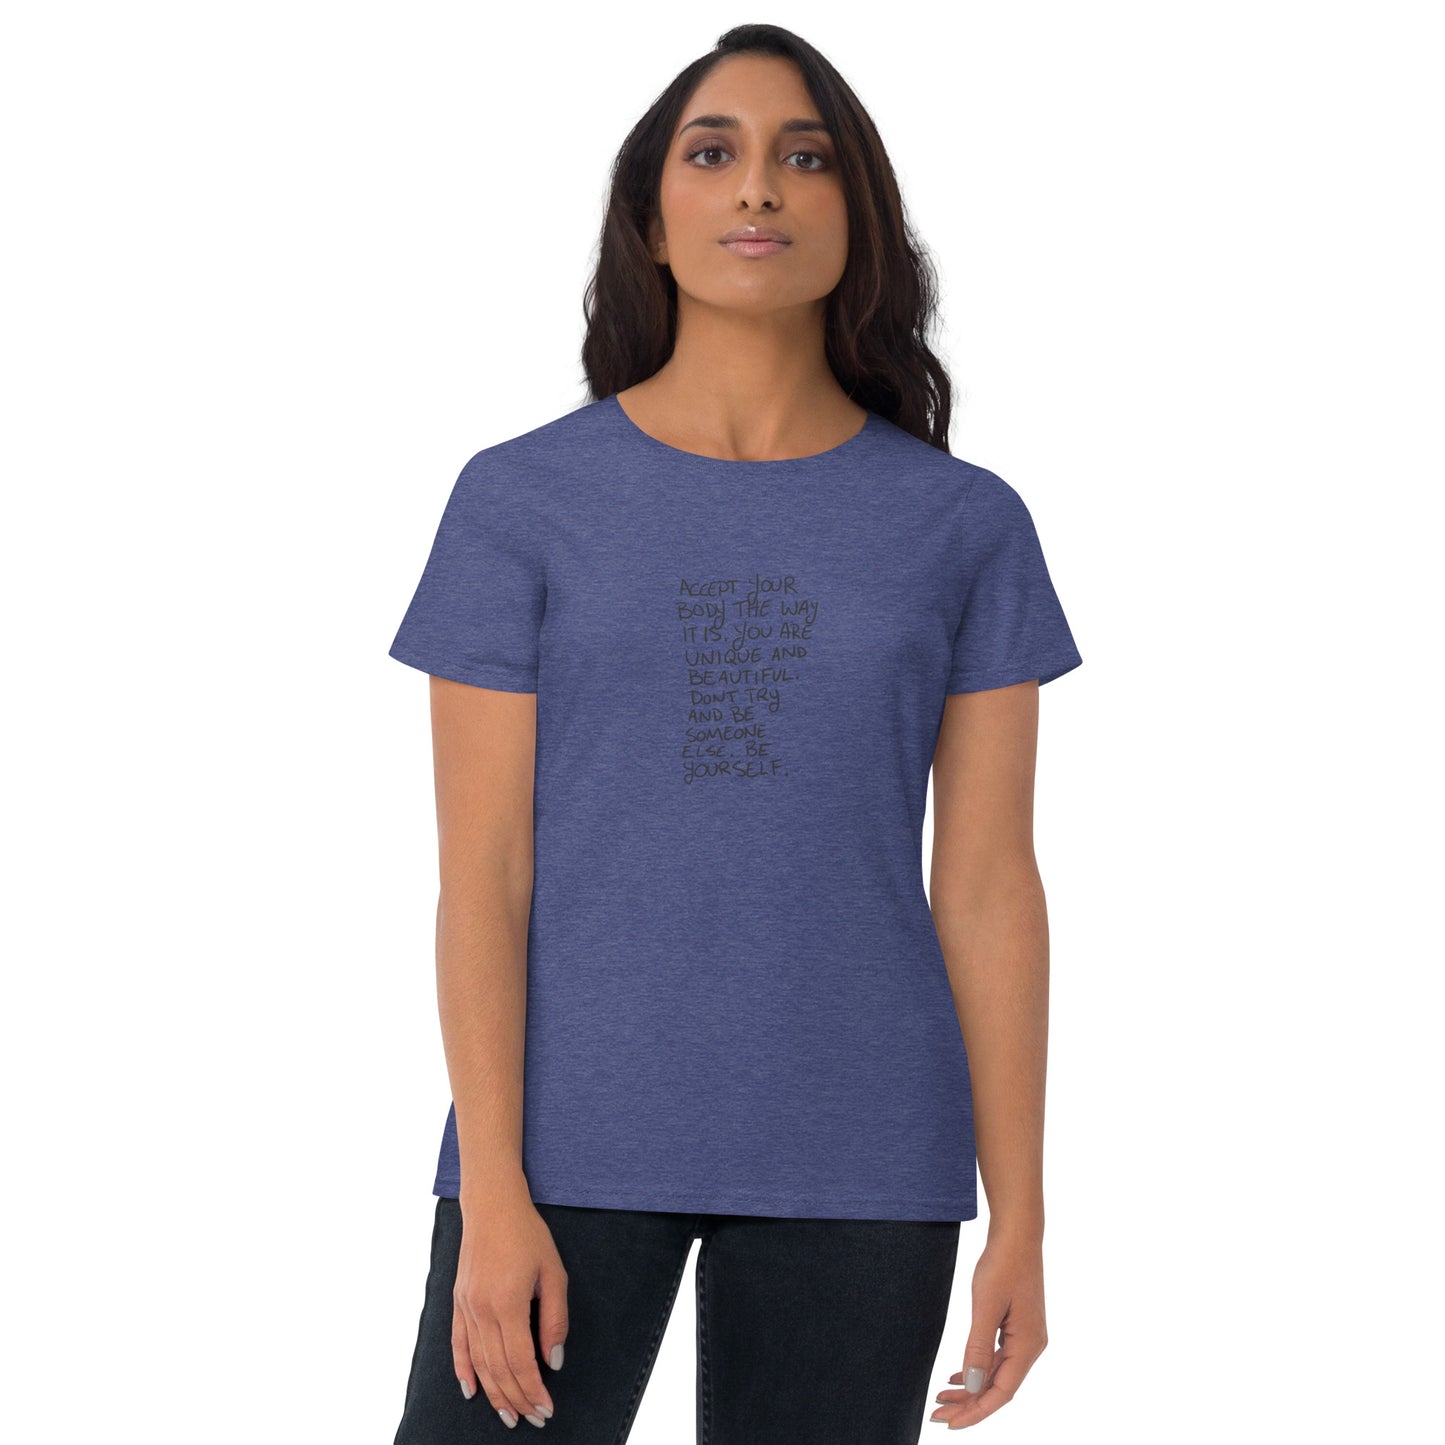 Romi Chase Star Logo Women's Short Sleeve T-shirt